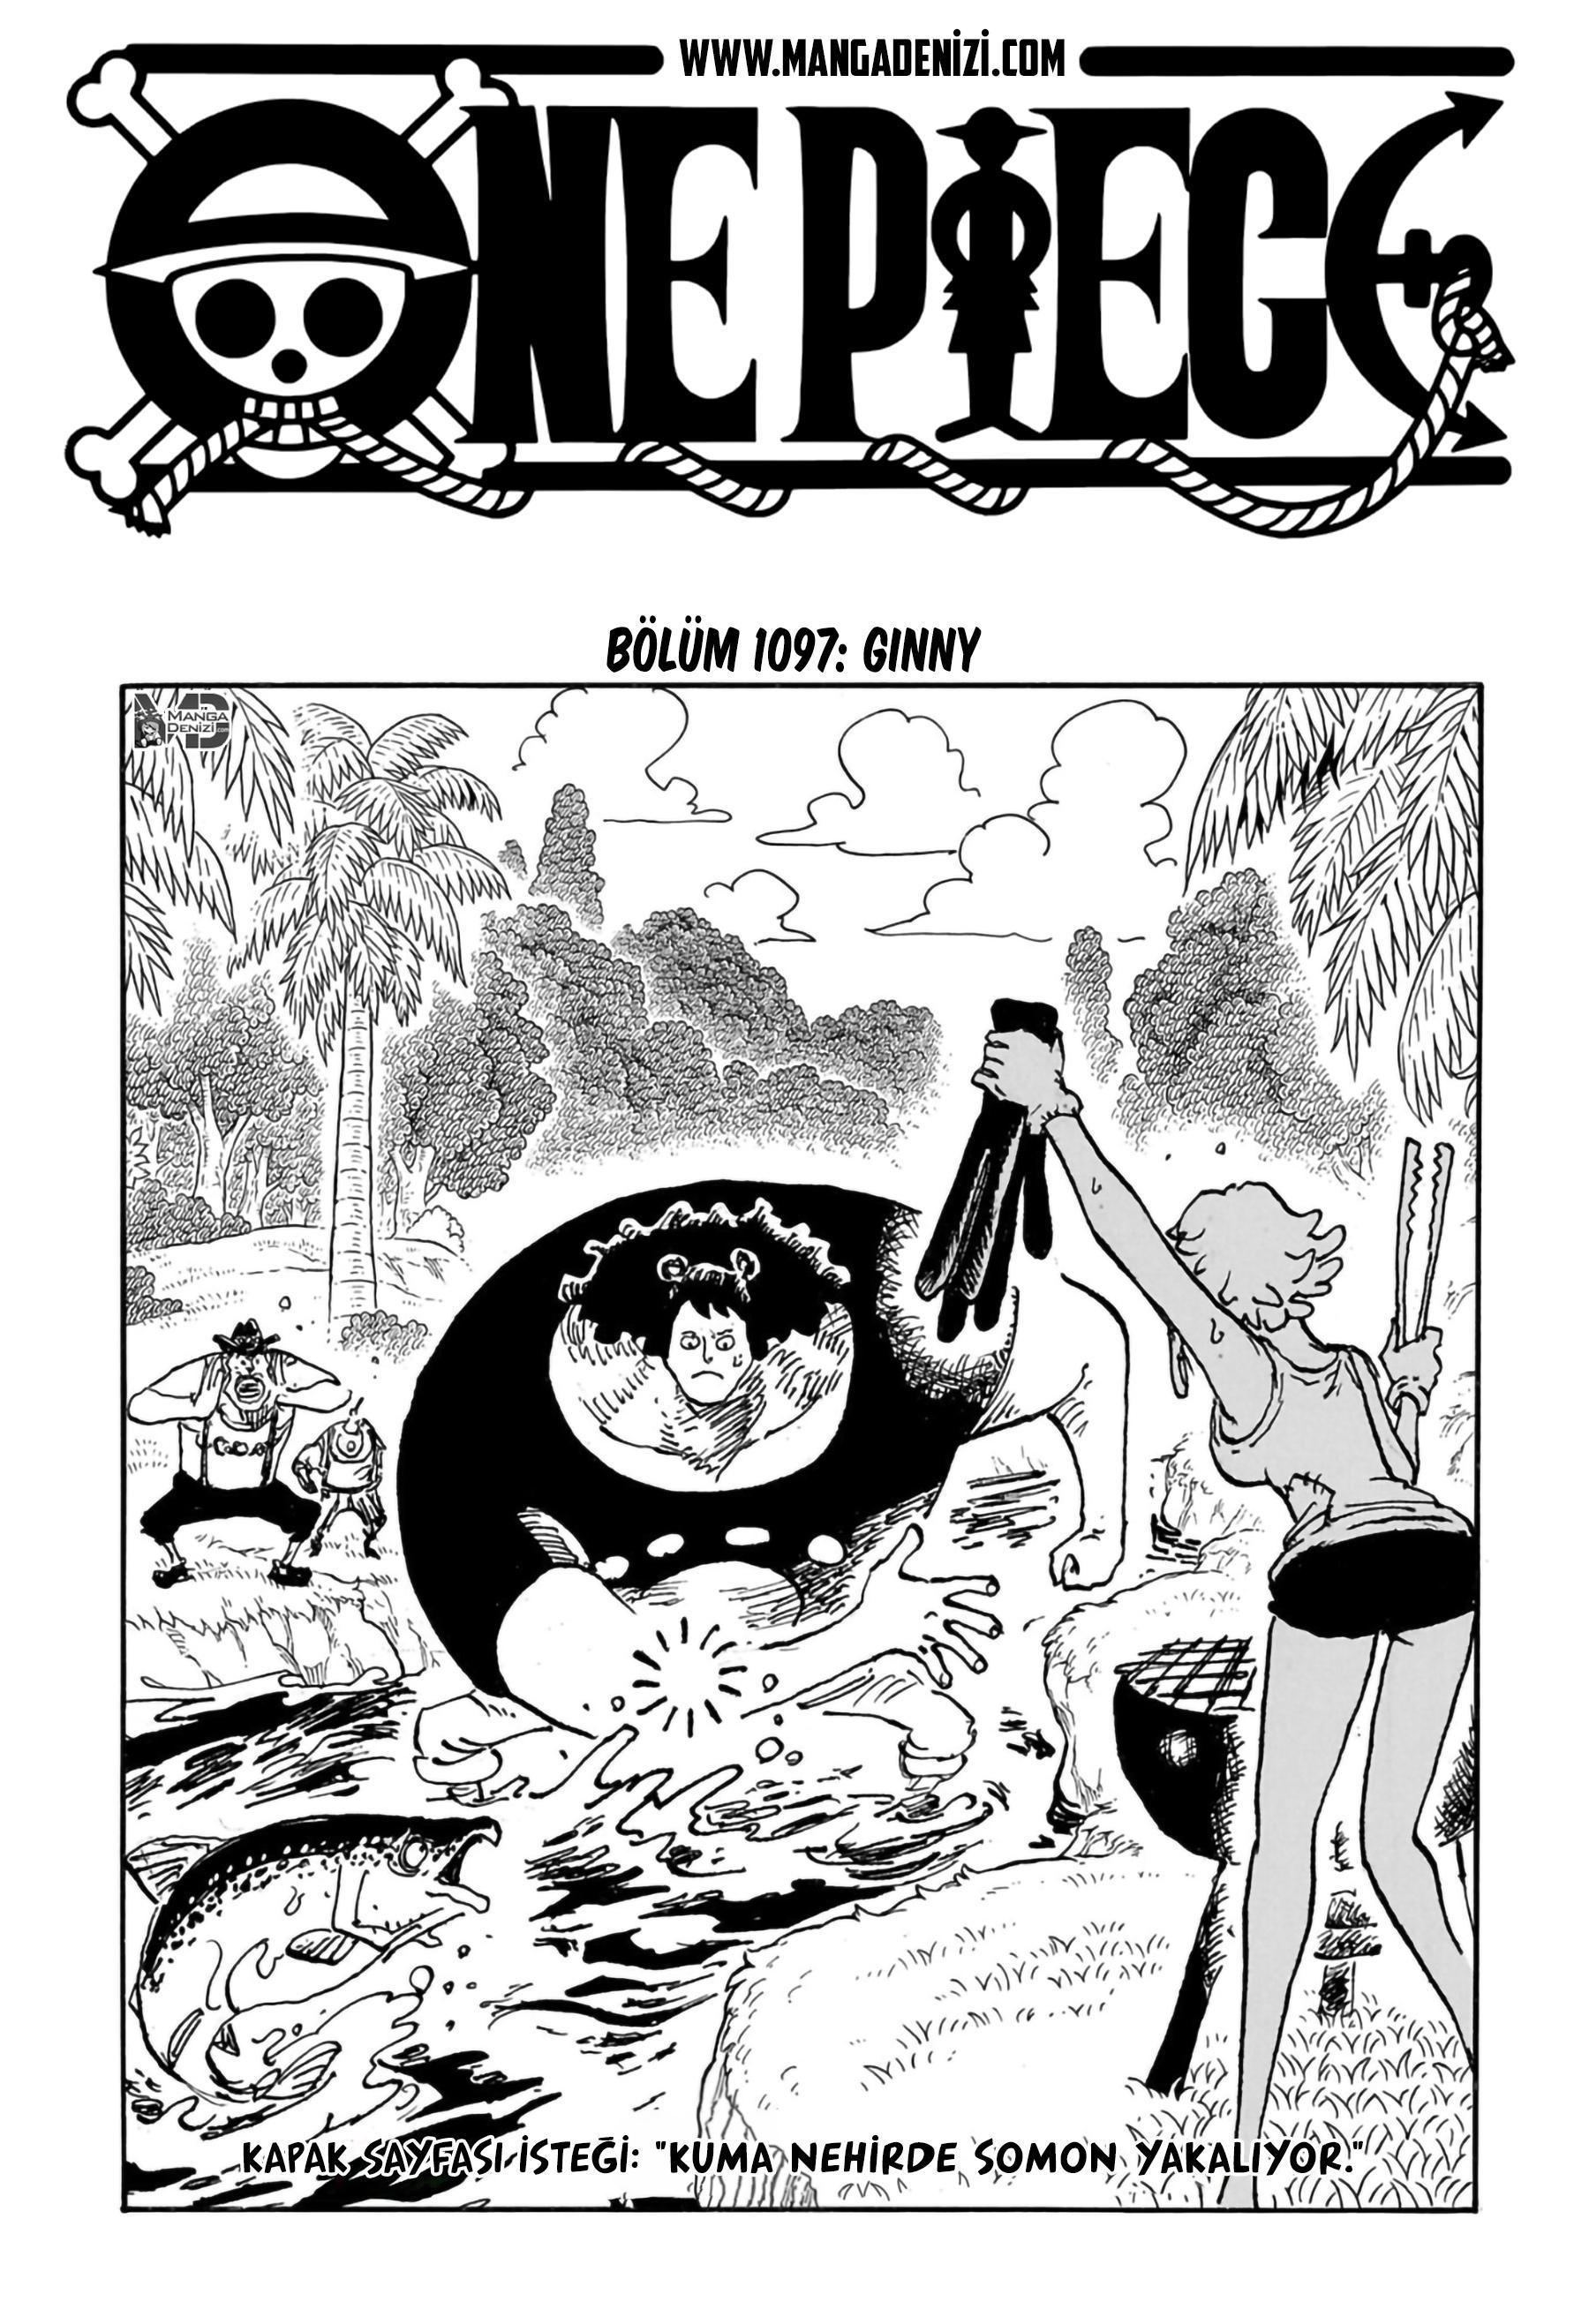 One Piece mangasının 1097 bölümünün 2. sayfasını okuyorsunuz.